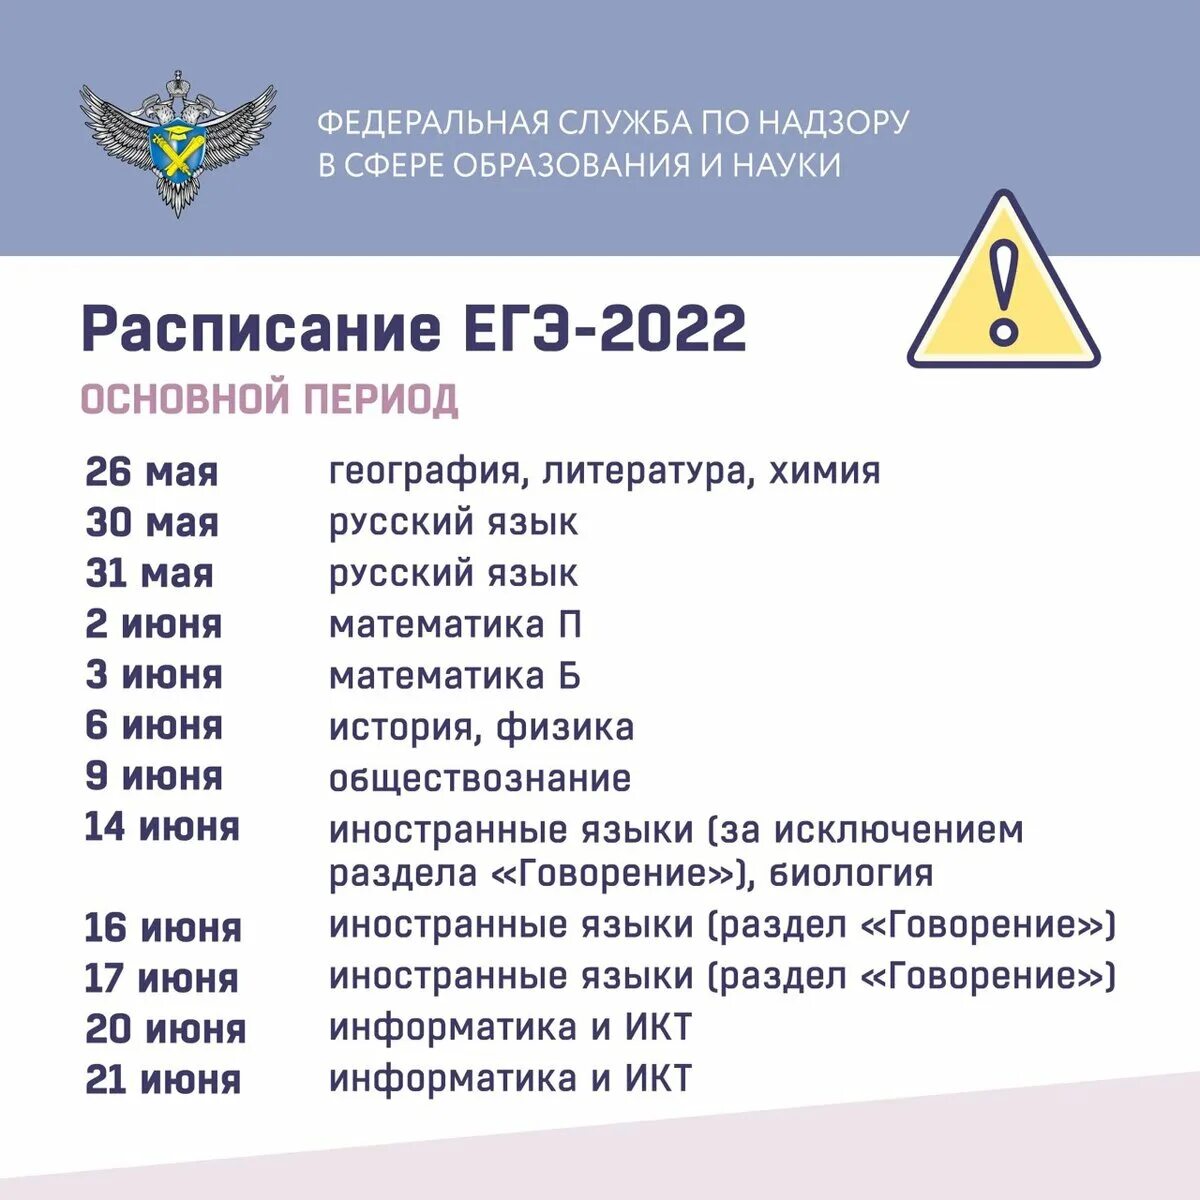 Даты экзаменов. Расписание сдачи экзаменов ЕГЭ 2022. Расписание экзаменов ЕГЭ 2022. Расписание ЕГЭ на 2022 год. ЕГЭ расписание ЕГЭ 2022.